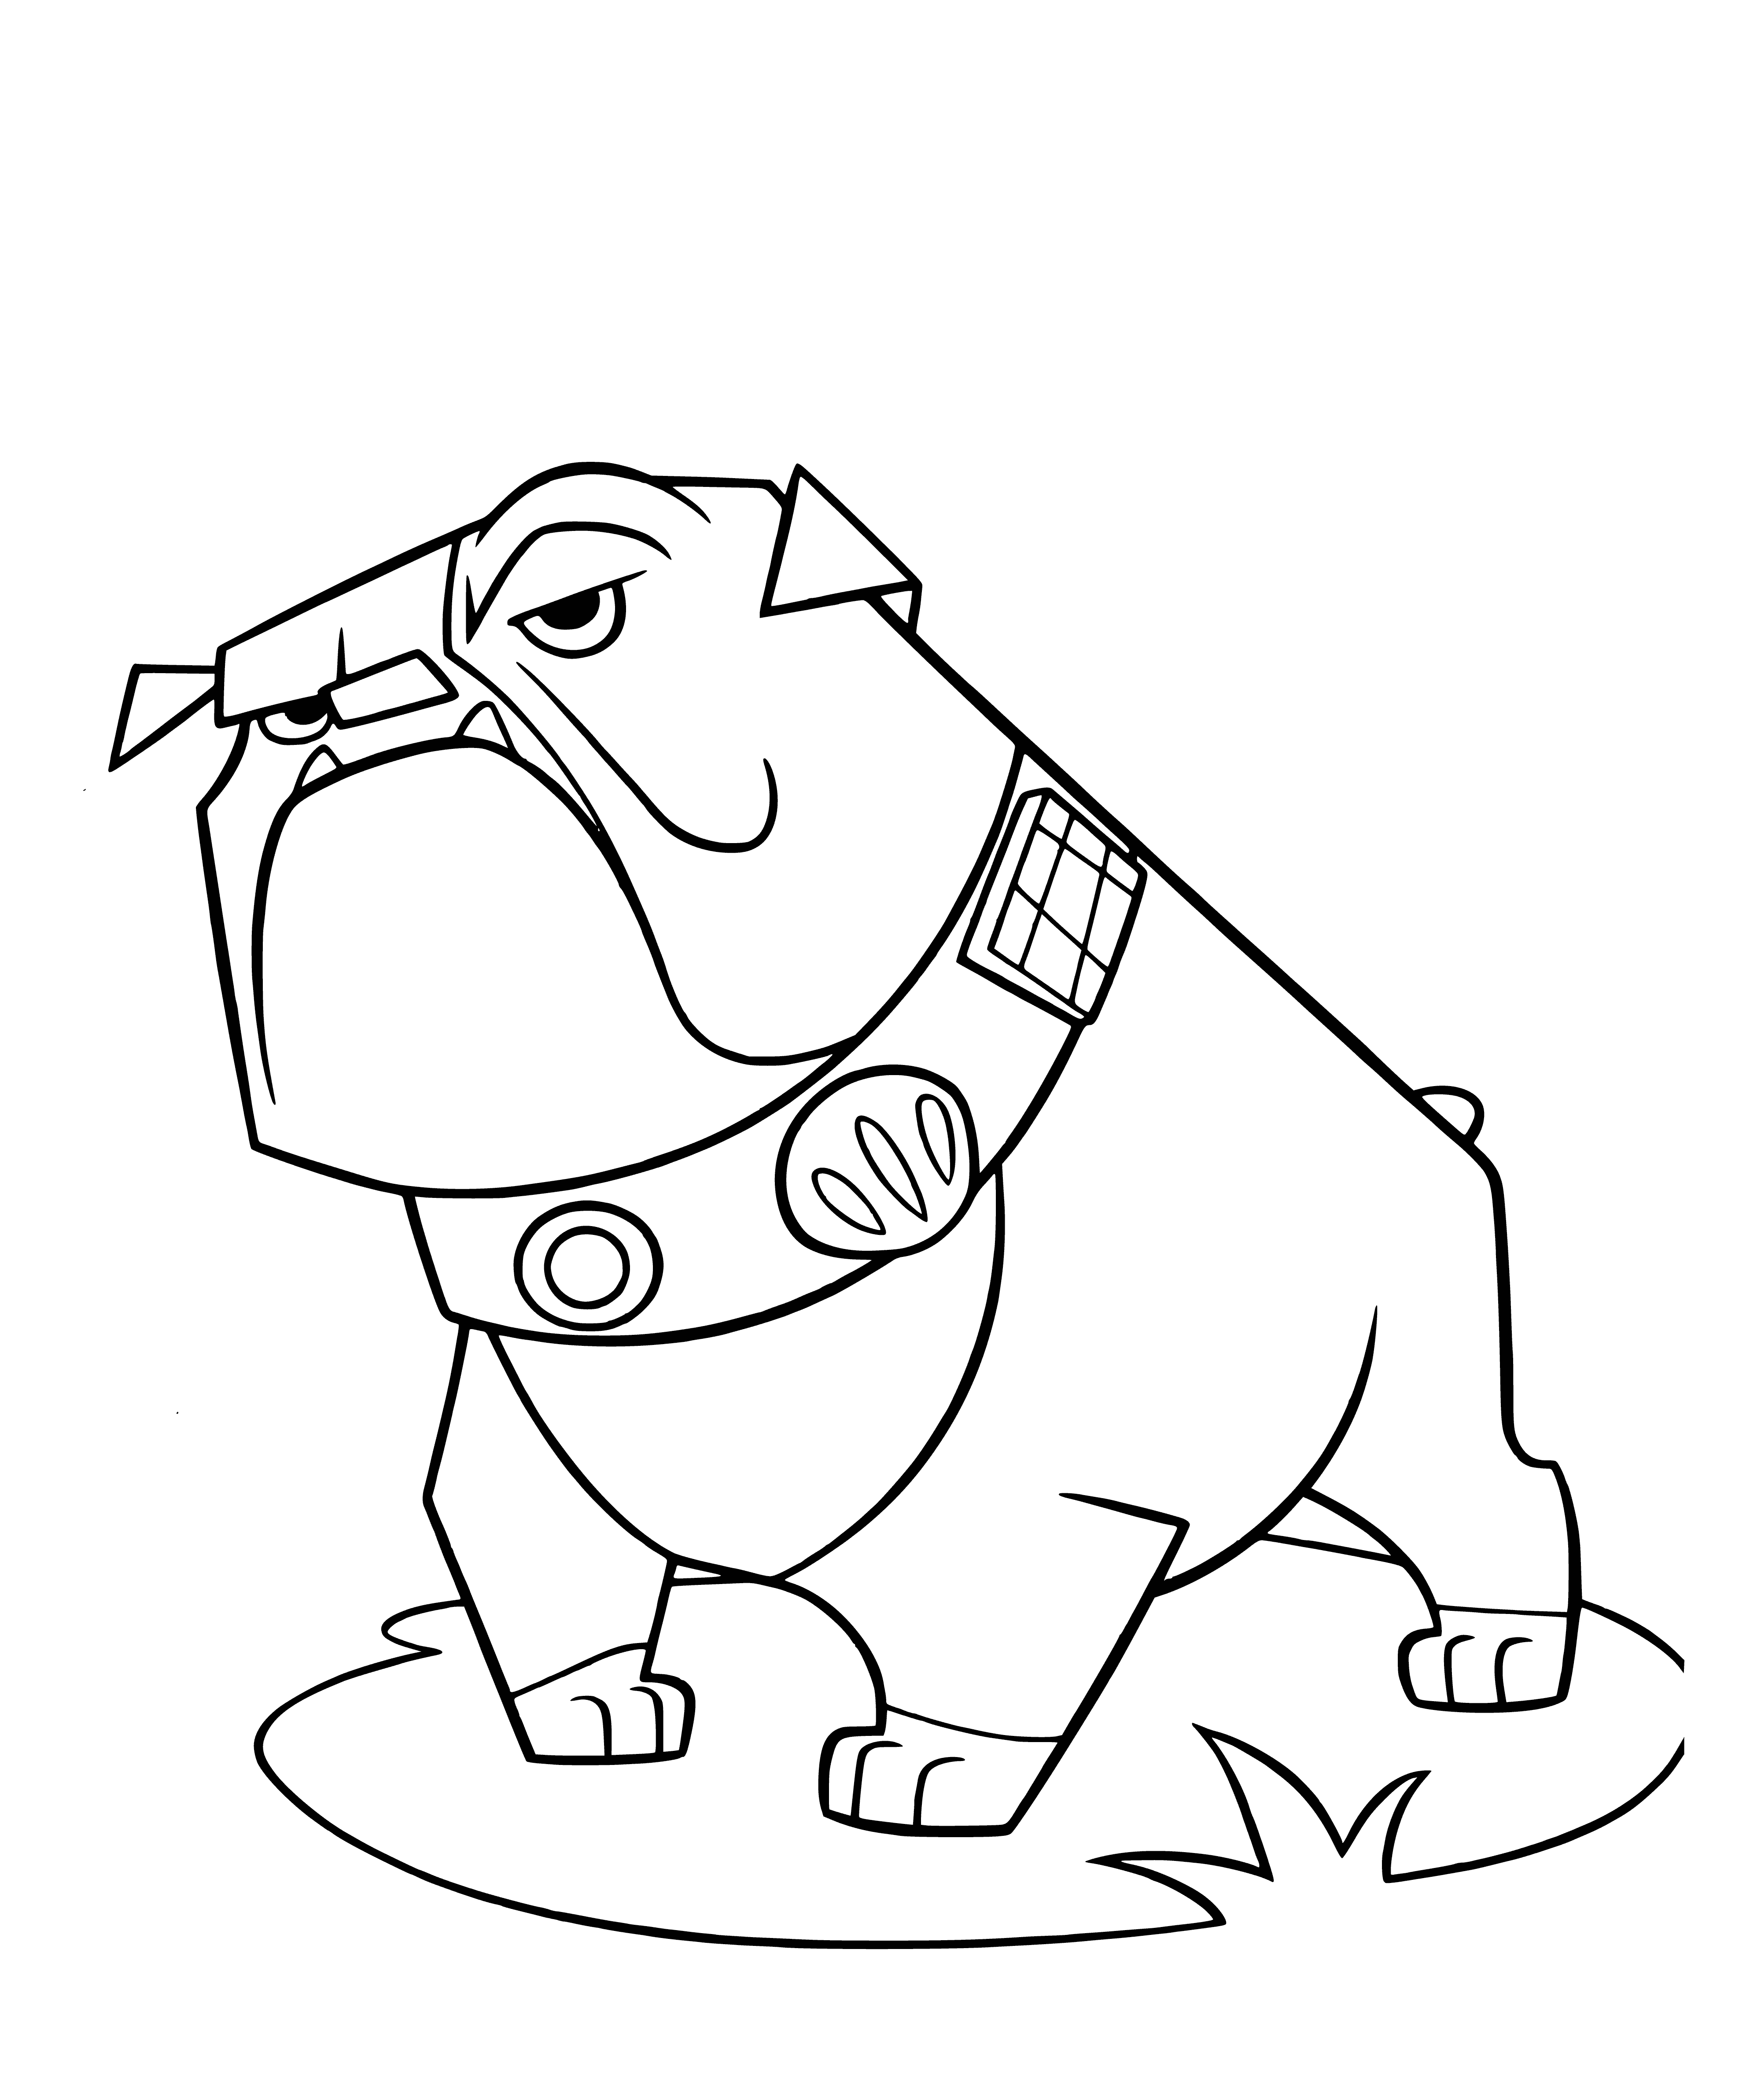 Bulldog coloring page